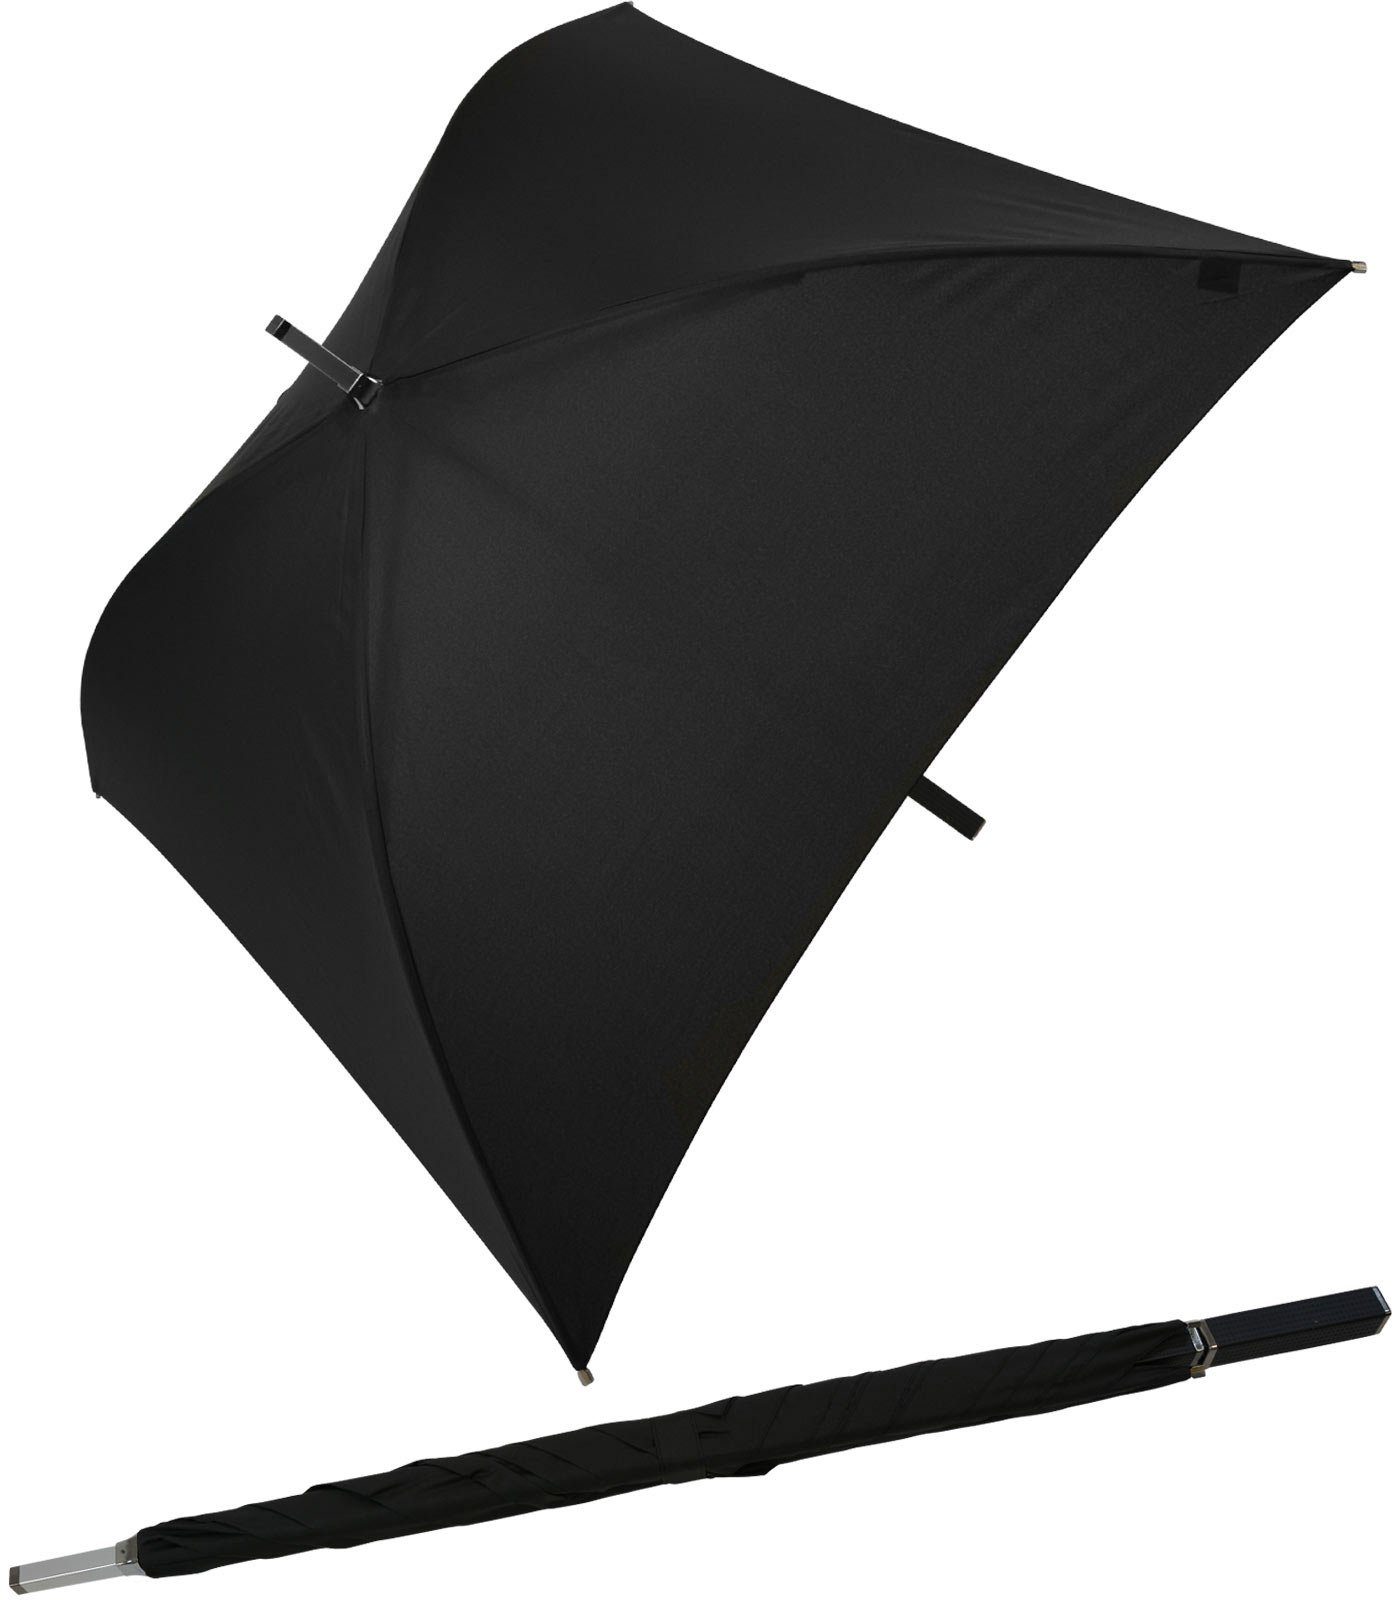 Square® Langregenschirm Impliva besondere quadratischer Regenschirm schwarz der All voll ganz Regenschirm,